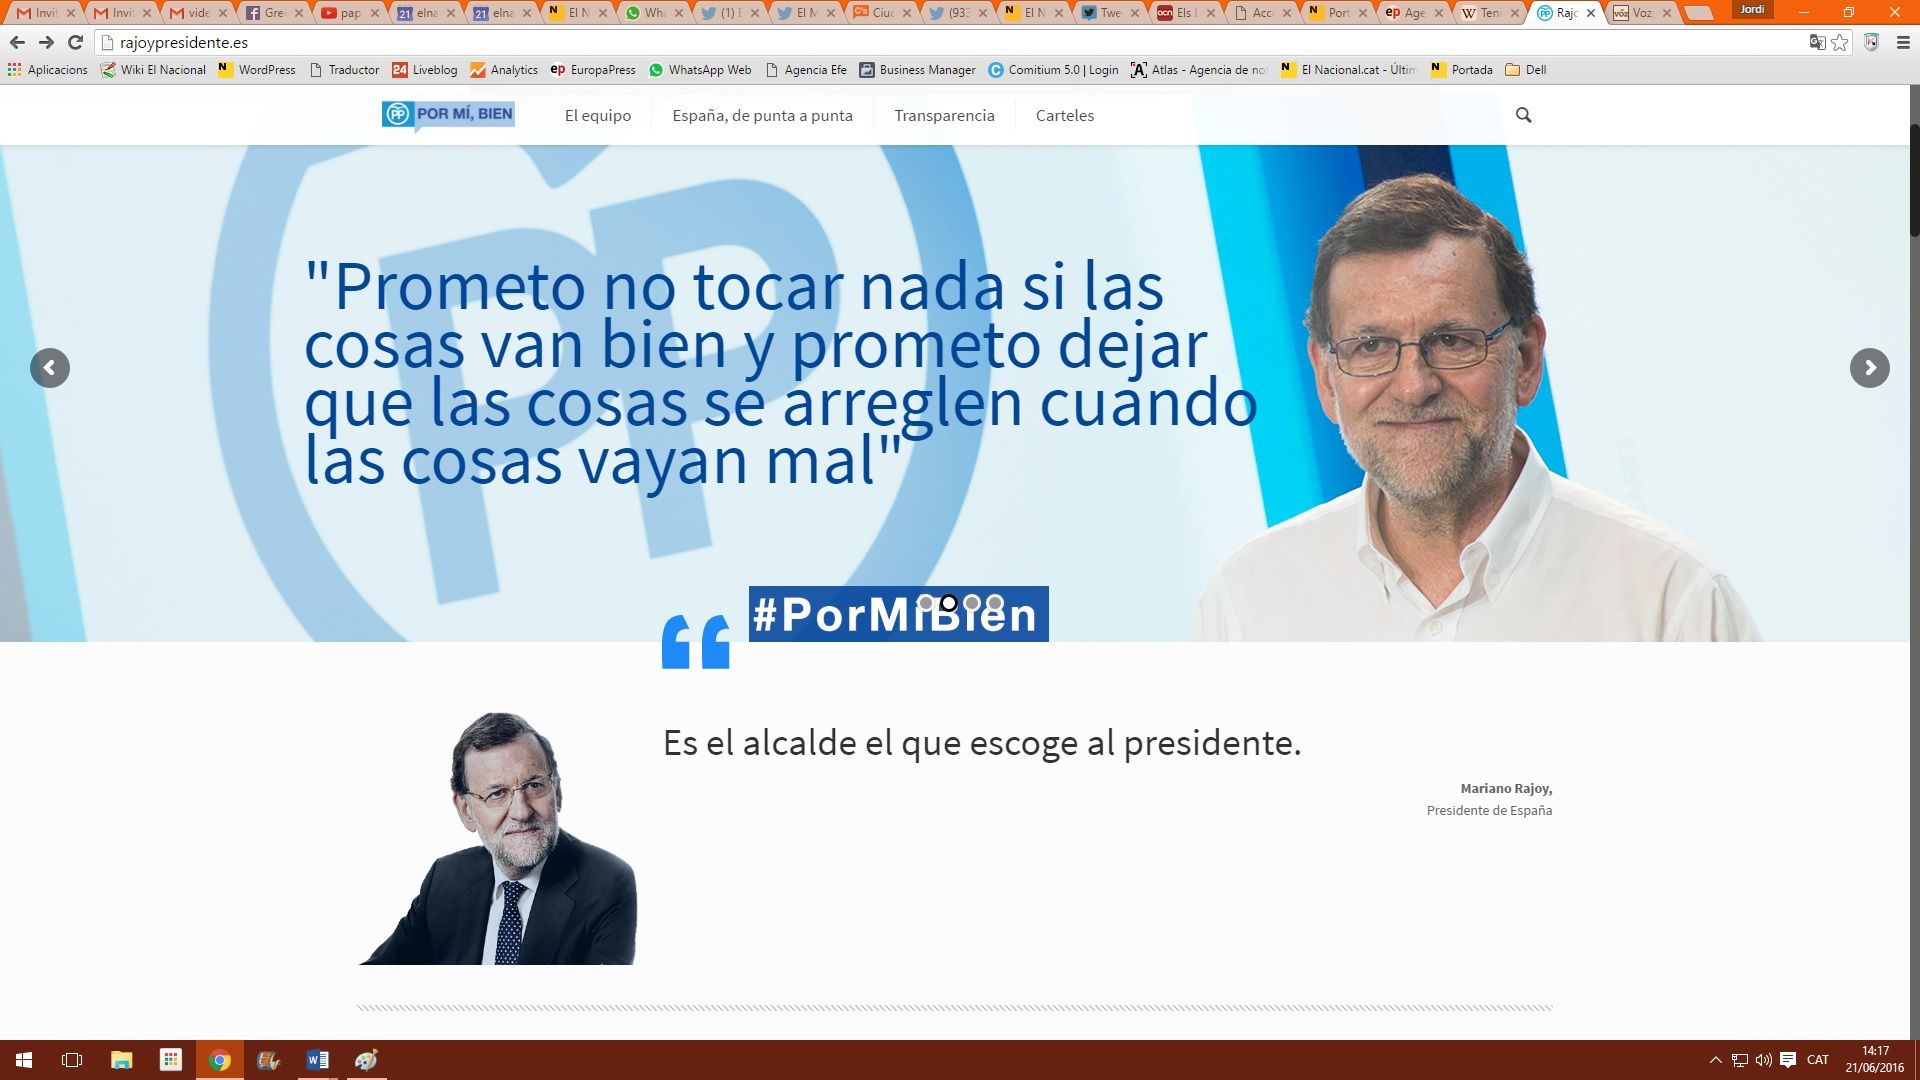 El Mundo Today cierra la web rajoypresidente.es ante las presiones del PP